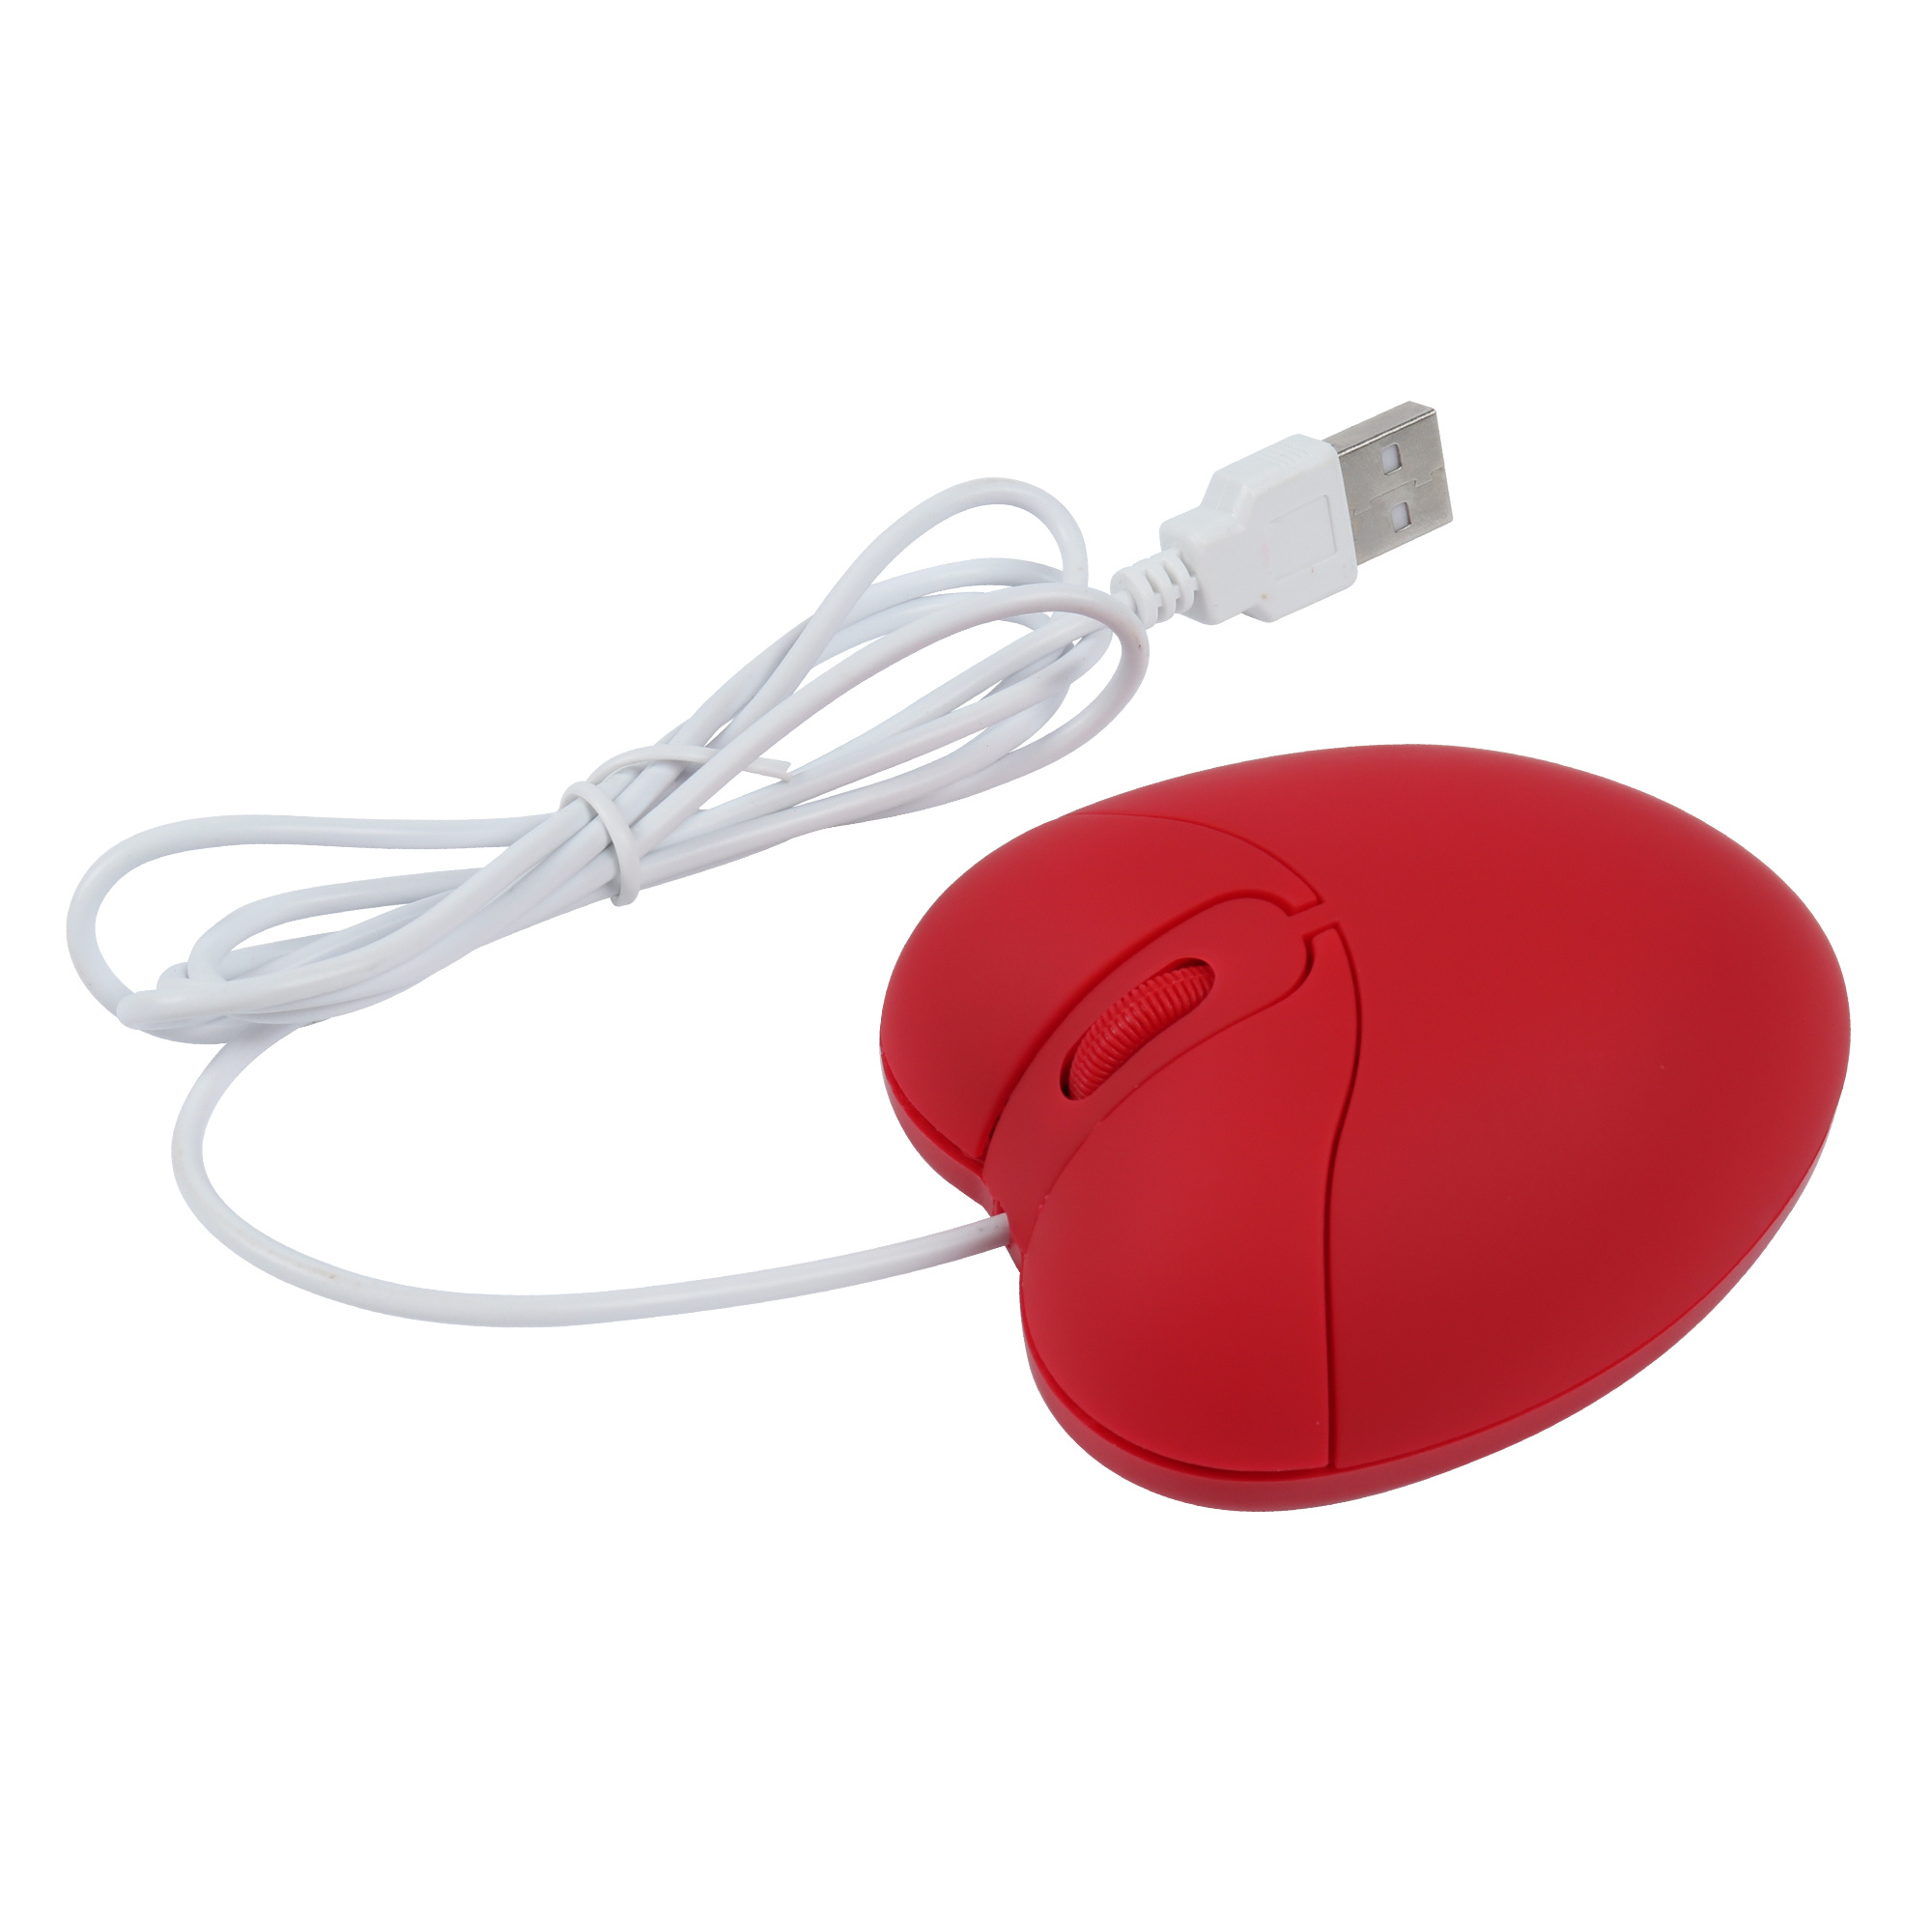 Computer-Bekabelde-Muis-USB-Optische-Creatieve-Gaming-Cute-Mause-Ergonomische-Love-Heart-3D-Muizen-voor-Laptop (6)